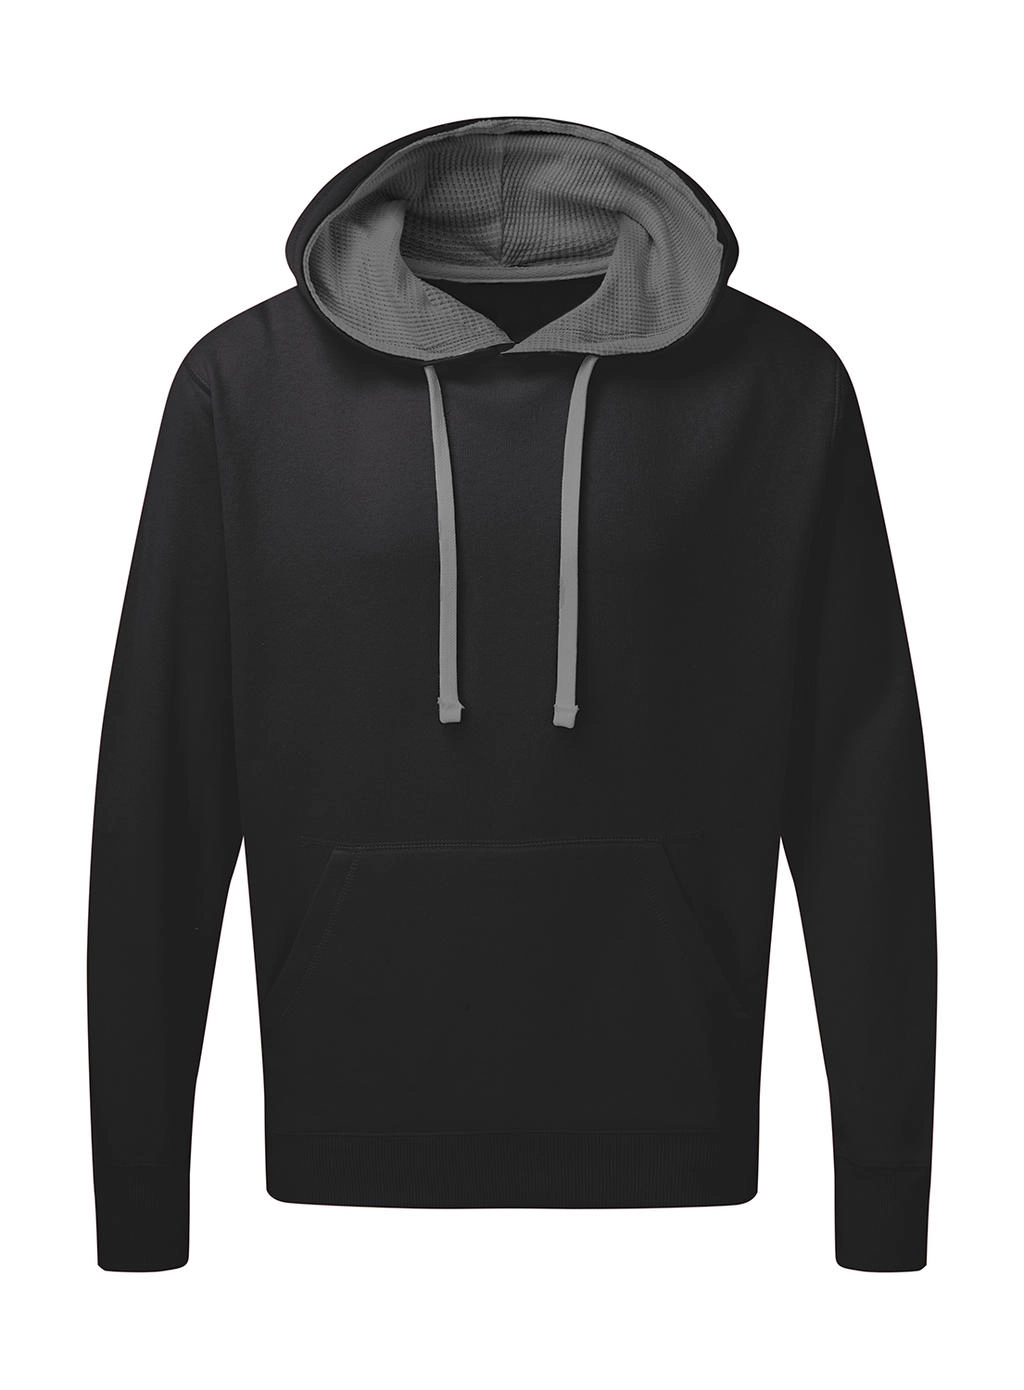 Contrast Hooded Sweatshirt Men zum Besticken und Bedrucken in der Farbe Black/Grey mit Ihren Logo, Schriftzug oder Motiv.